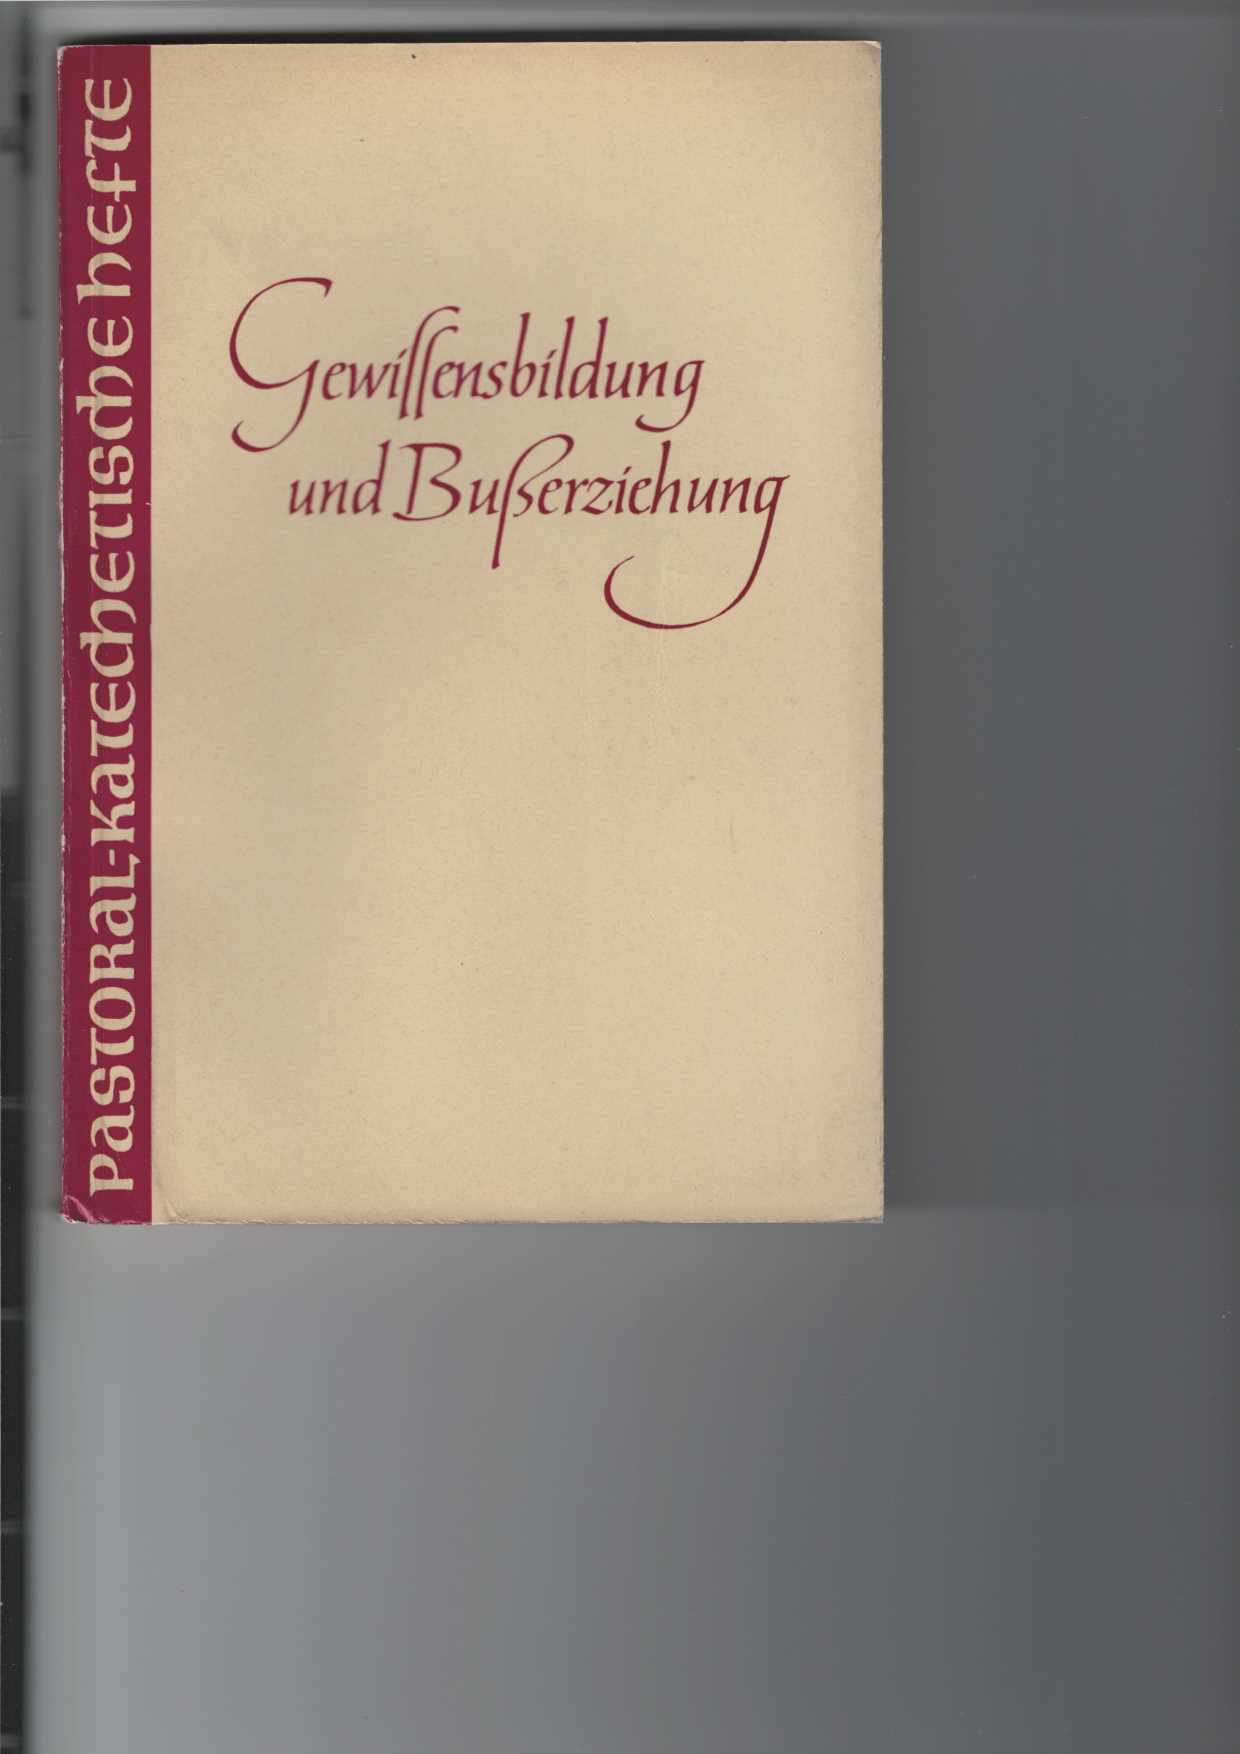 Tilmann, Klemens:  Gewissensbildung und Buerziehung : Pastoral-Katechetische Hefte, Heft 19. 